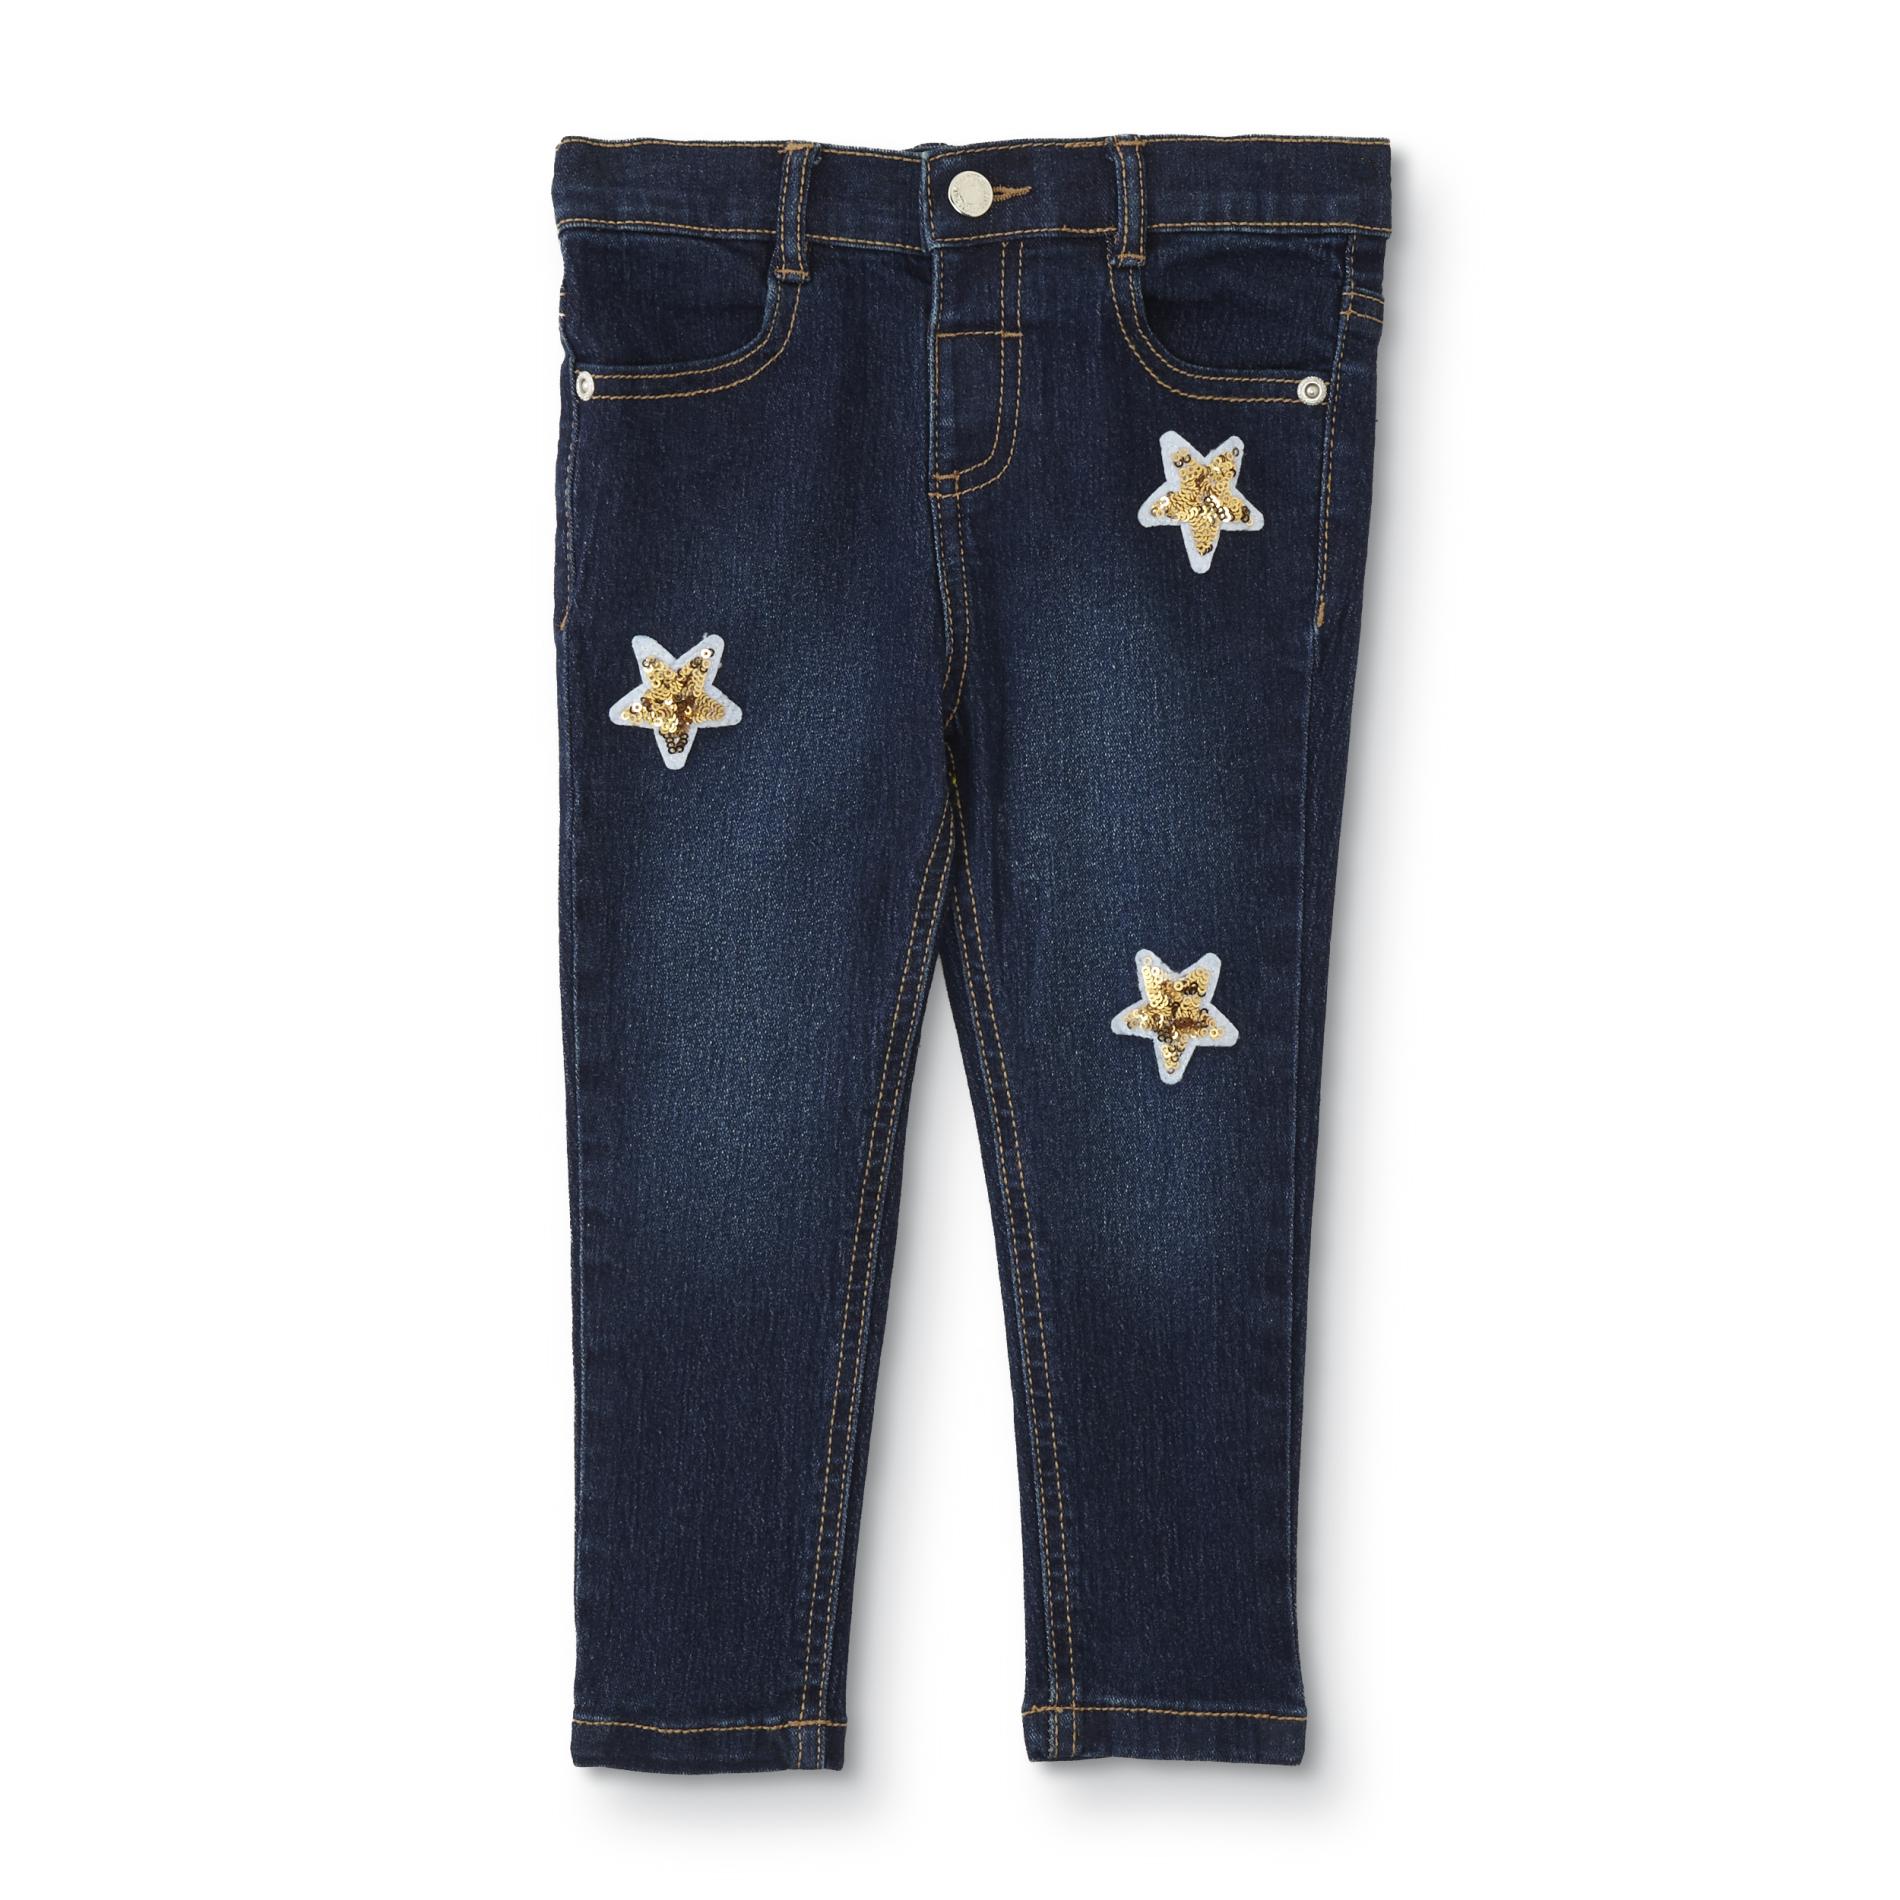 Toughskins Girls' Embellished Jeans - Stars